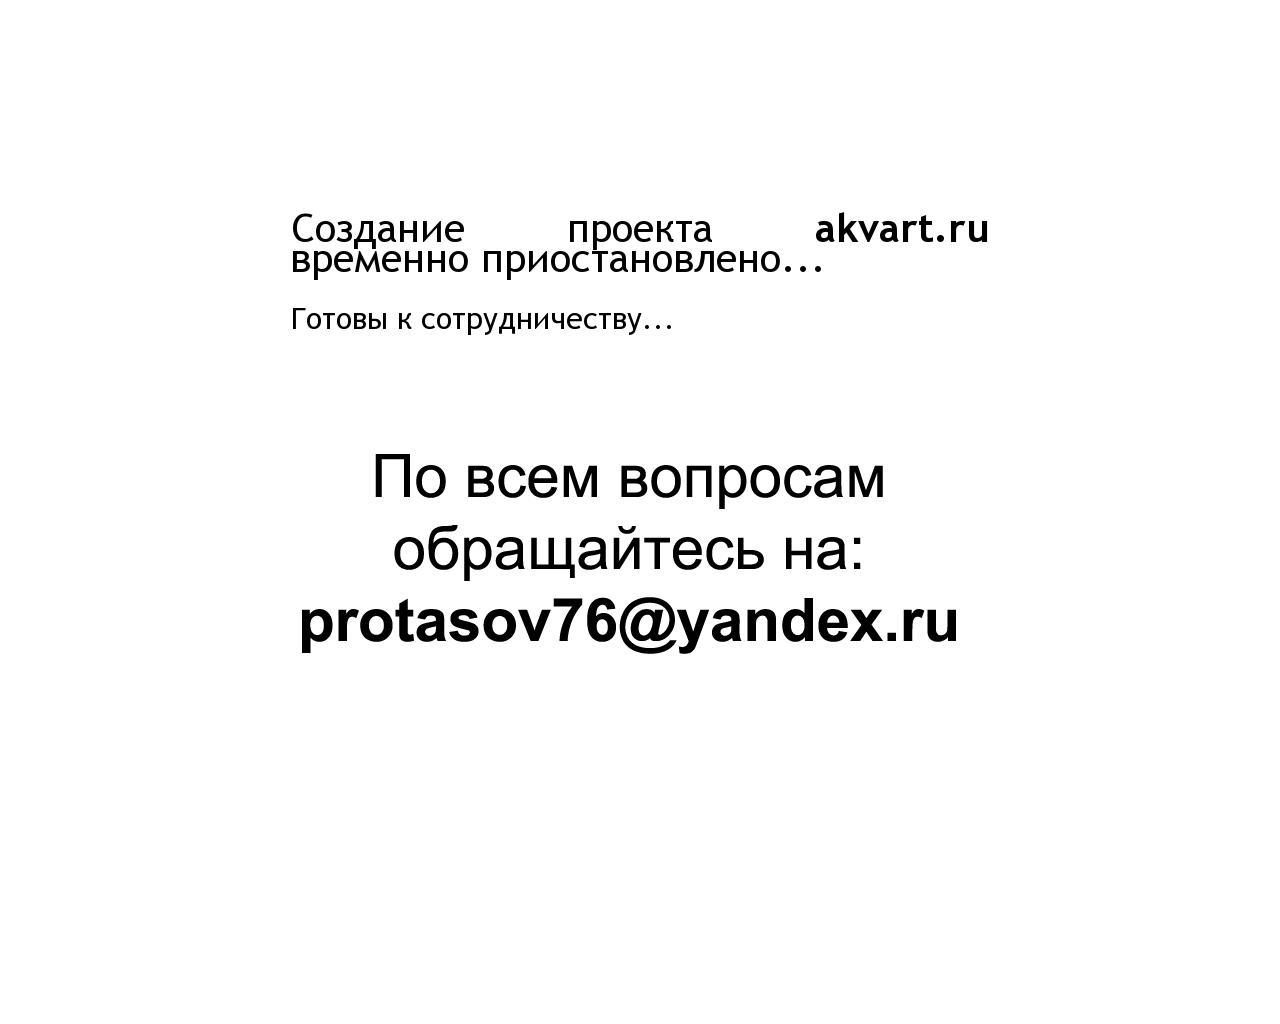 Изображение сайта akvart.ru в разрешении 1280x1024